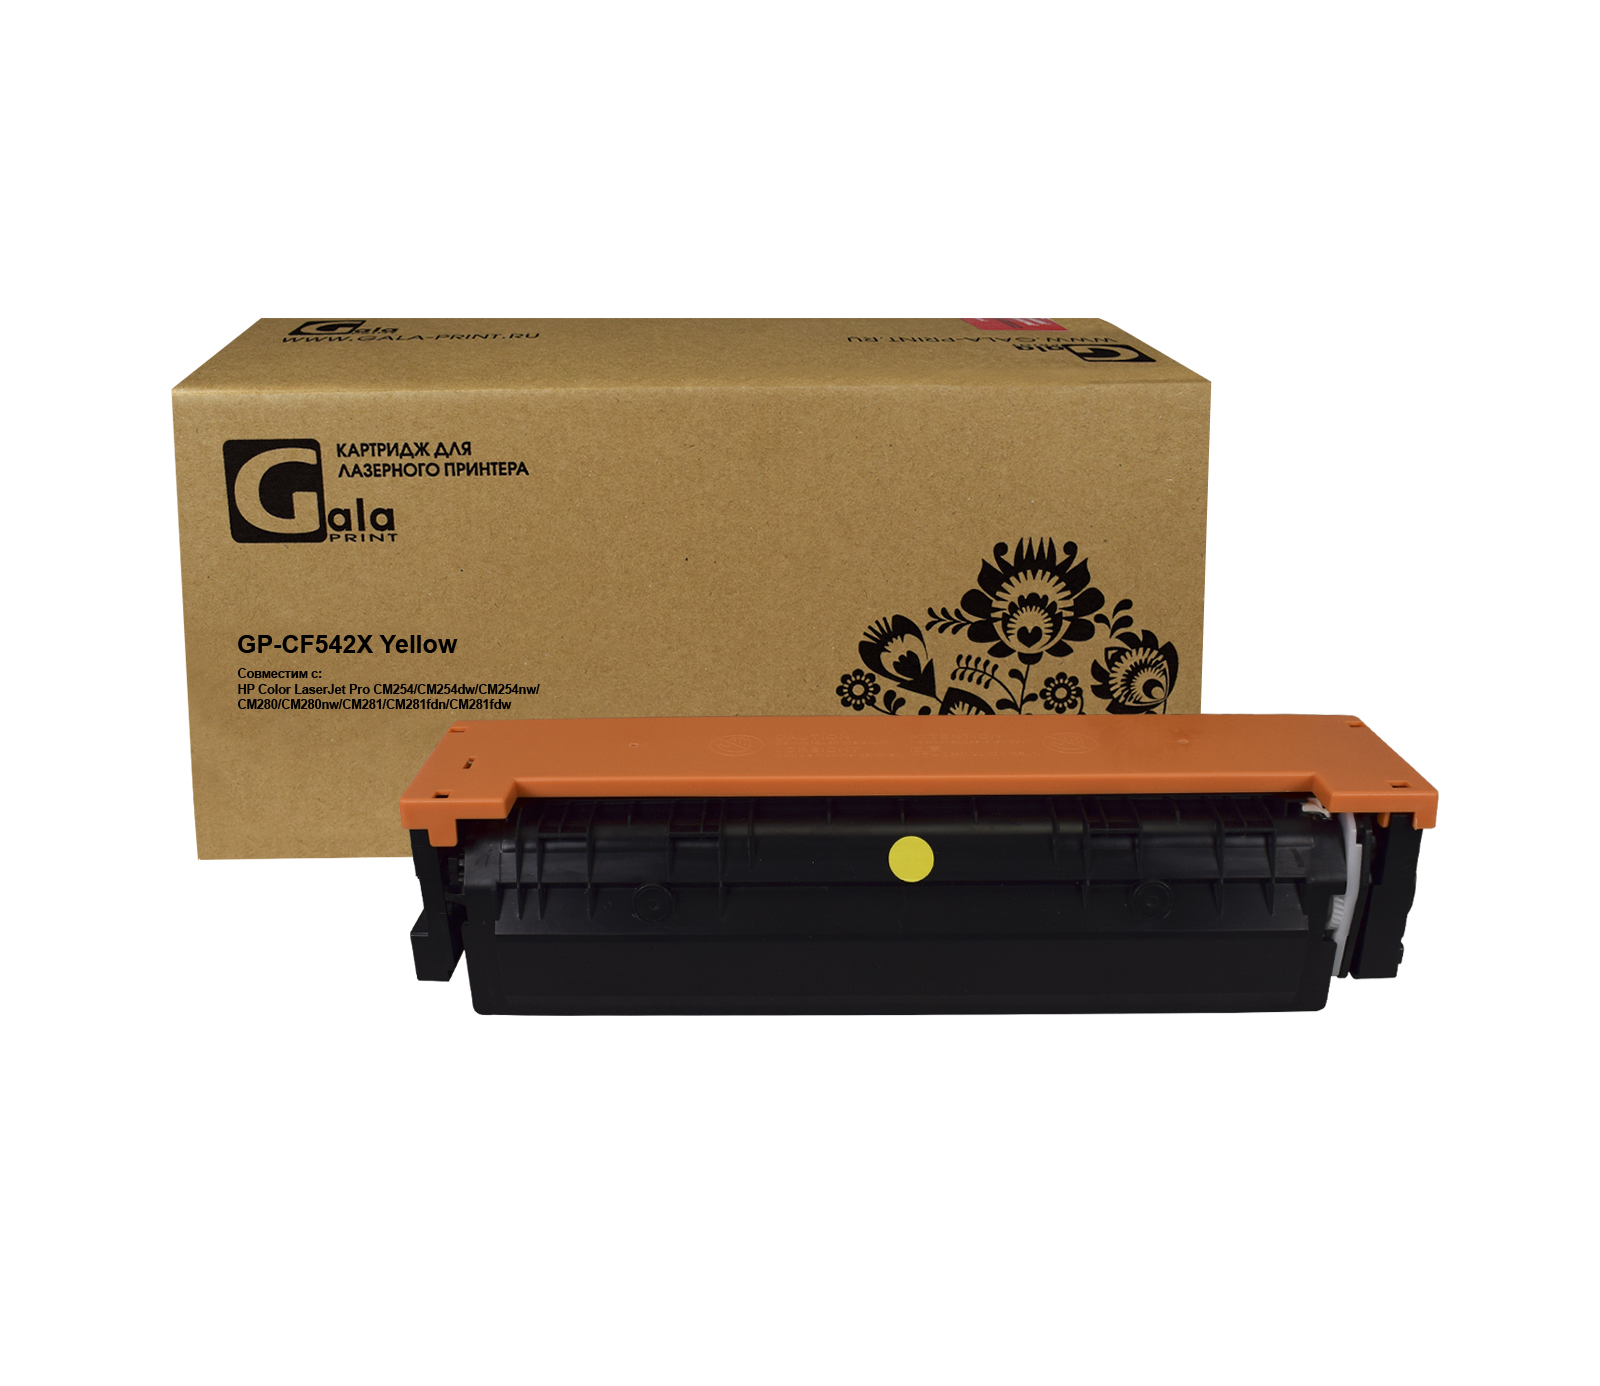 Картридж GP-CF542X №203X для принтеров HP Color LaserJet Pro M254/280/281 2500 копий Yellow GalaPrint